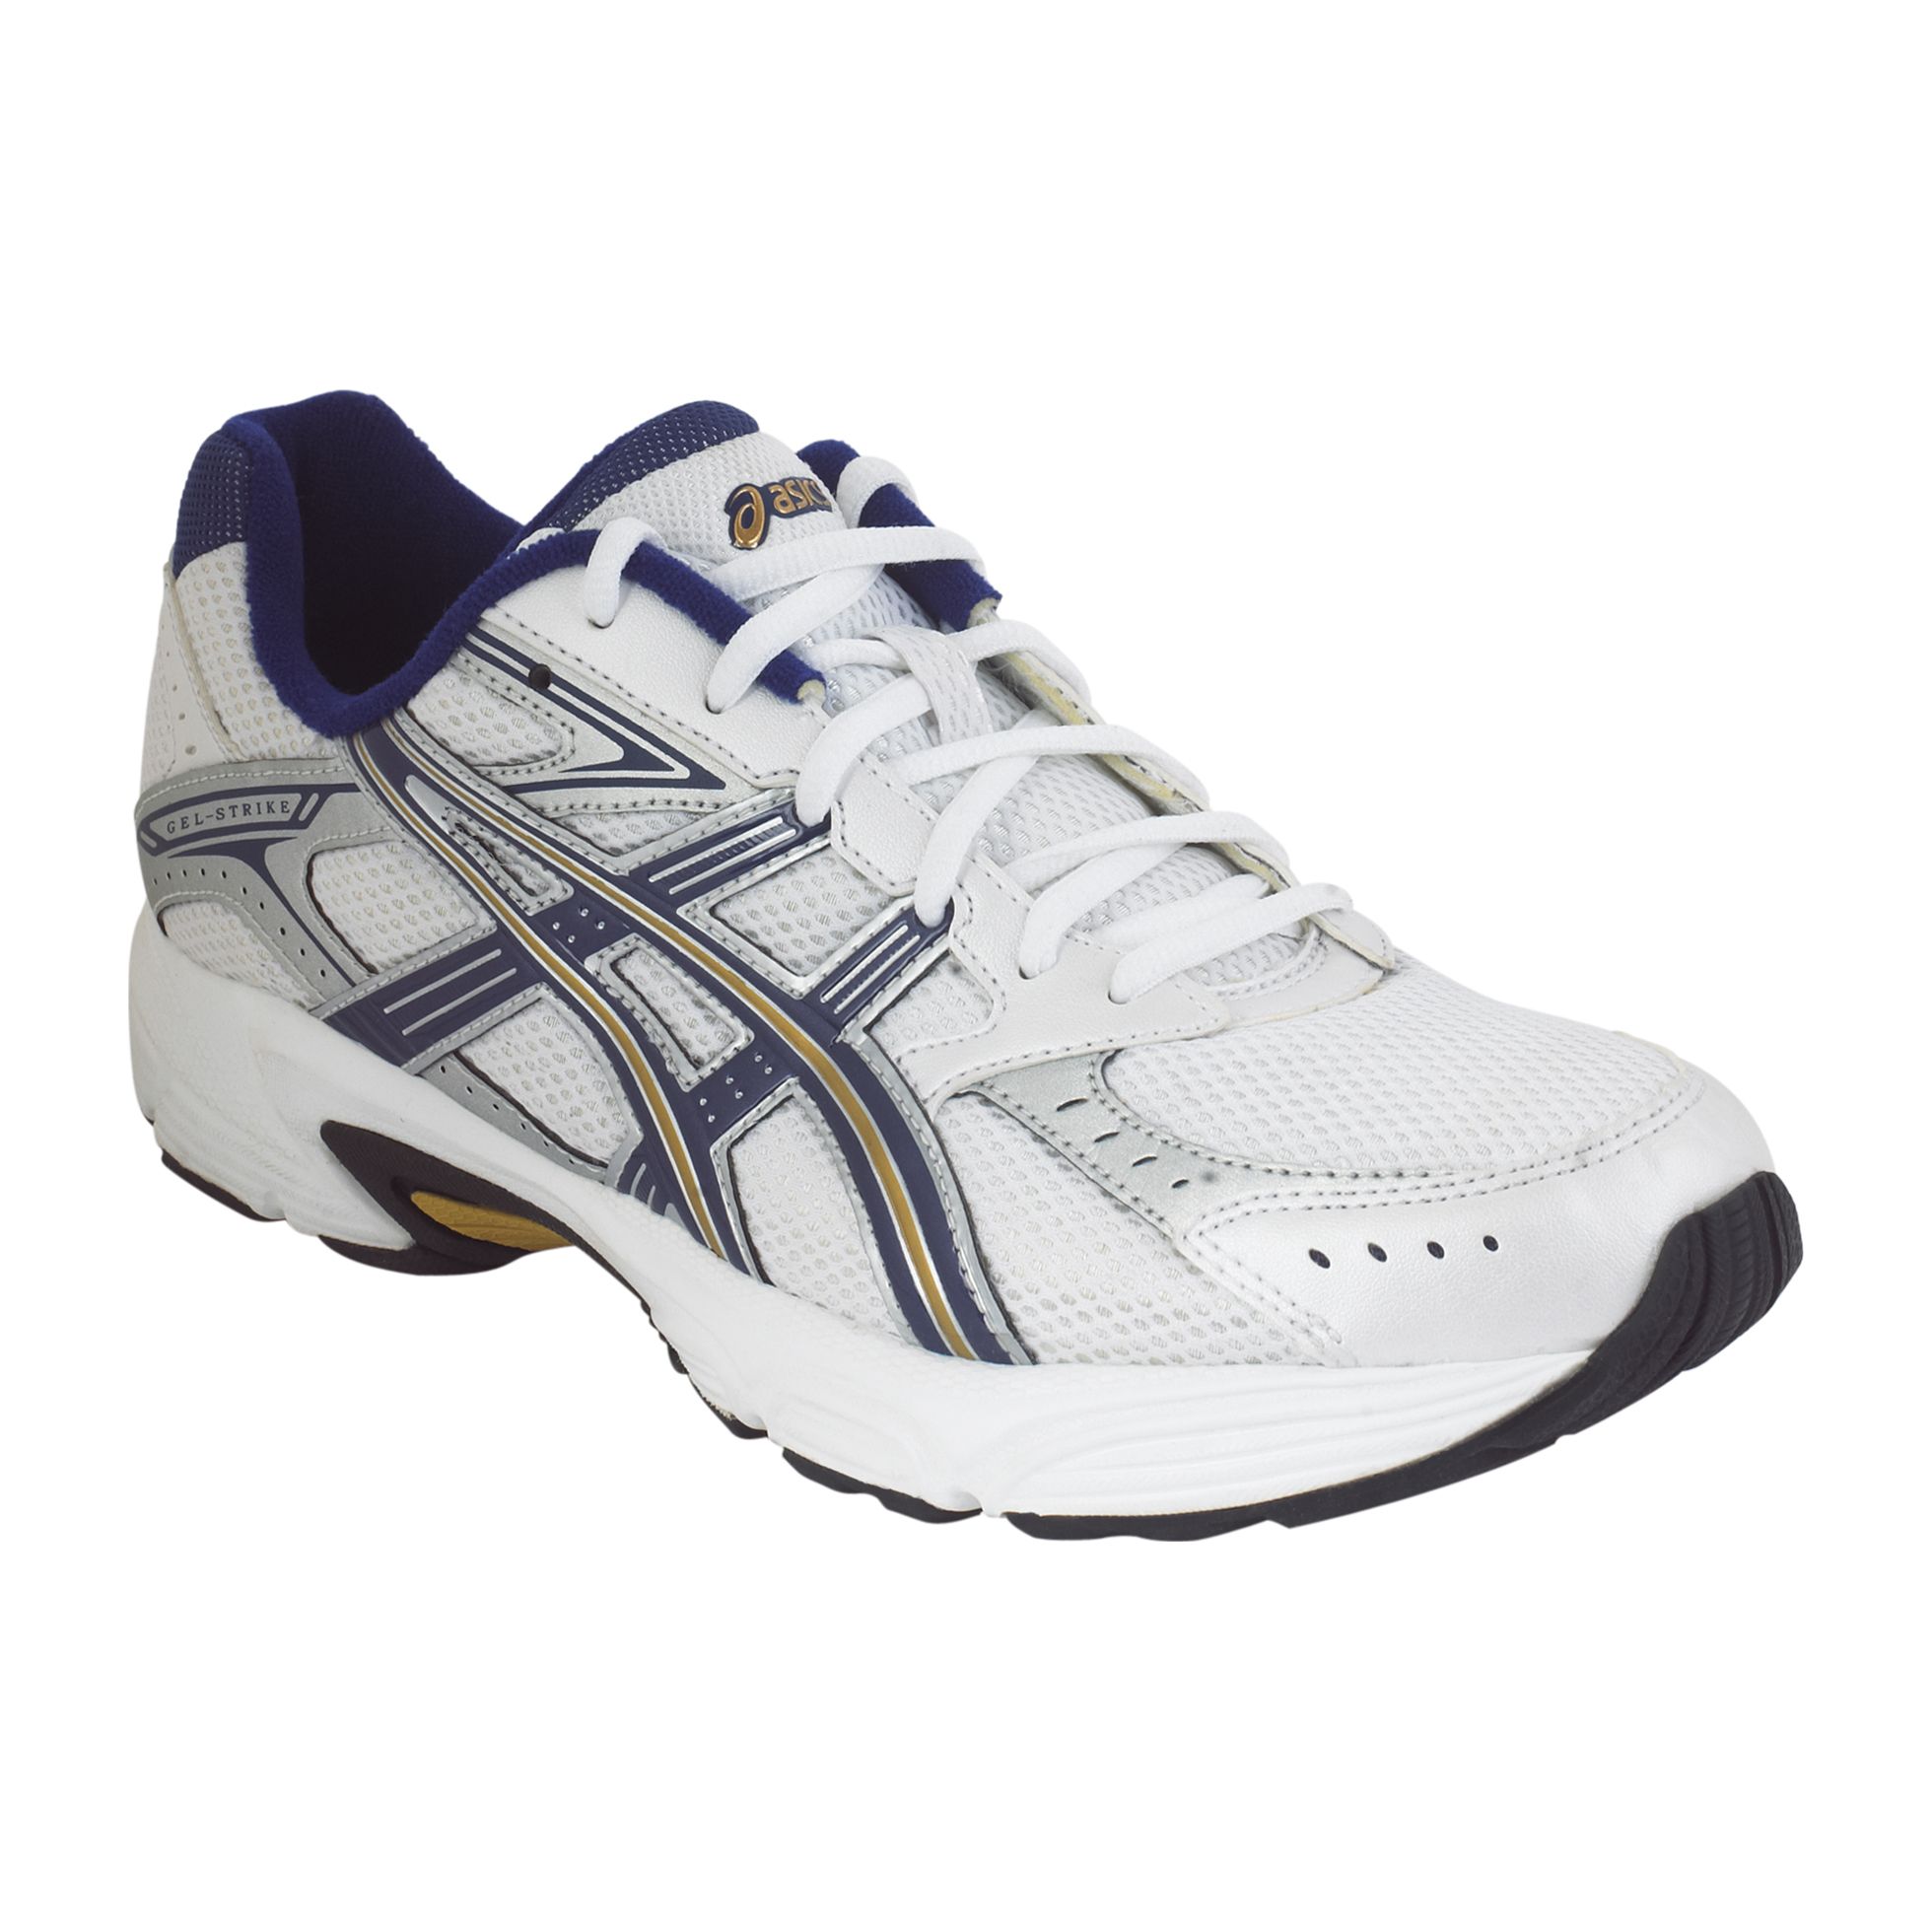 ASICS Men's Gel Strike 2 - White/Navy/Gold - Clothing, Shoes & Jewelry -  Shoes - Men's Shoes - Men's Sneakers & Athletic Shoes